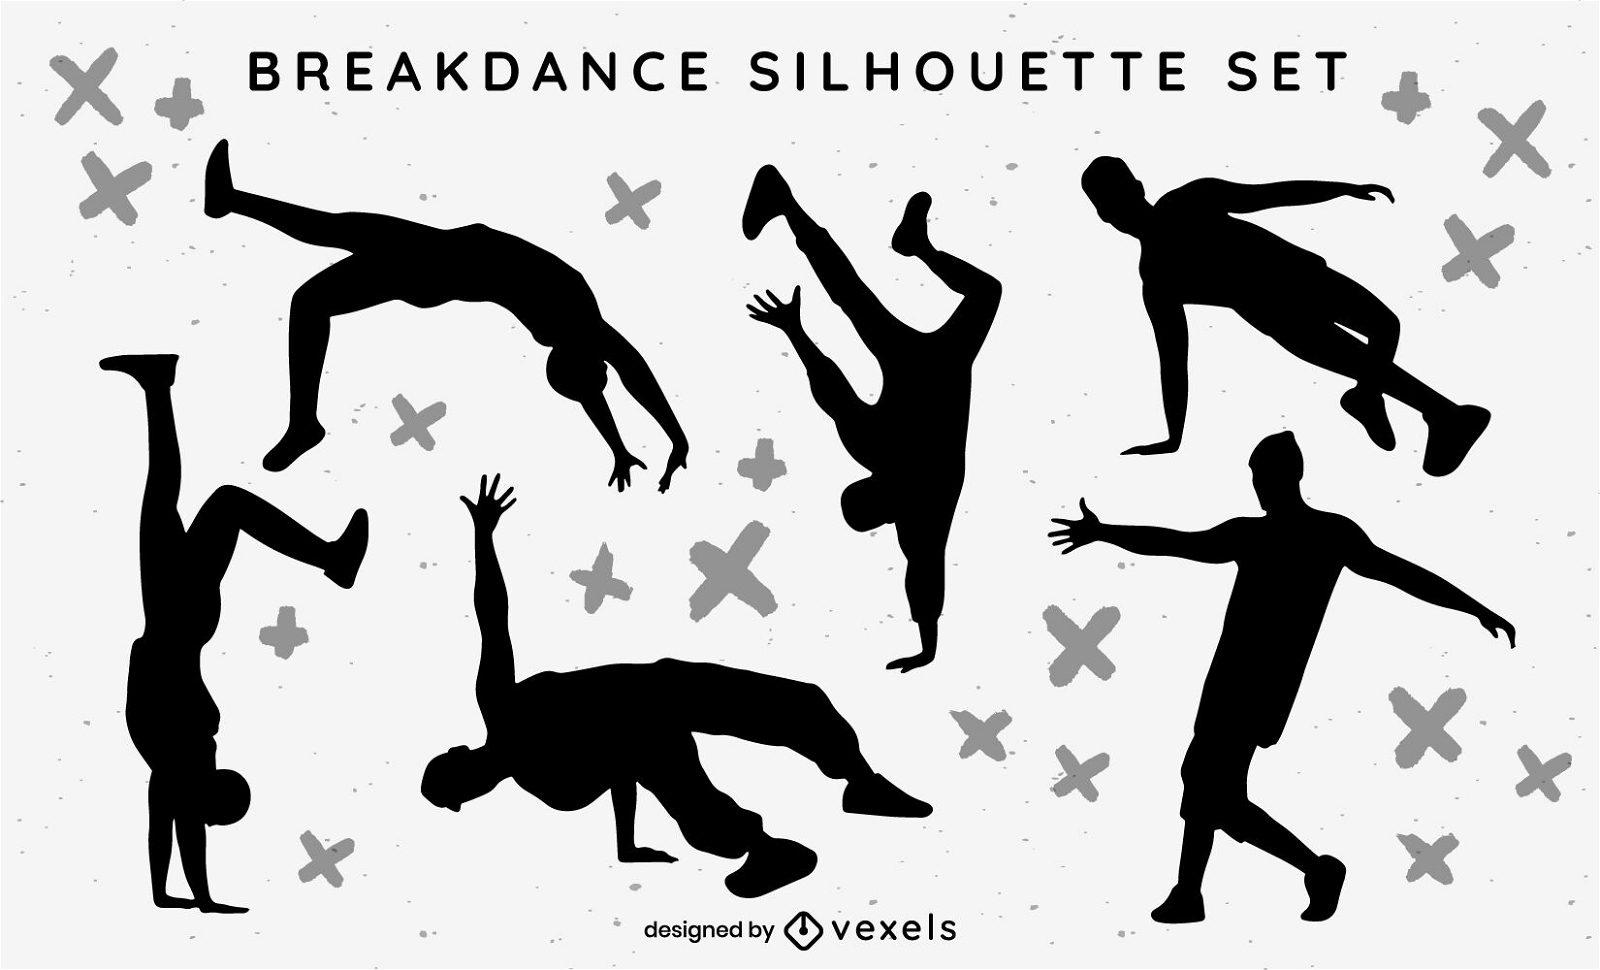 People breakdancing hobby silhouette set